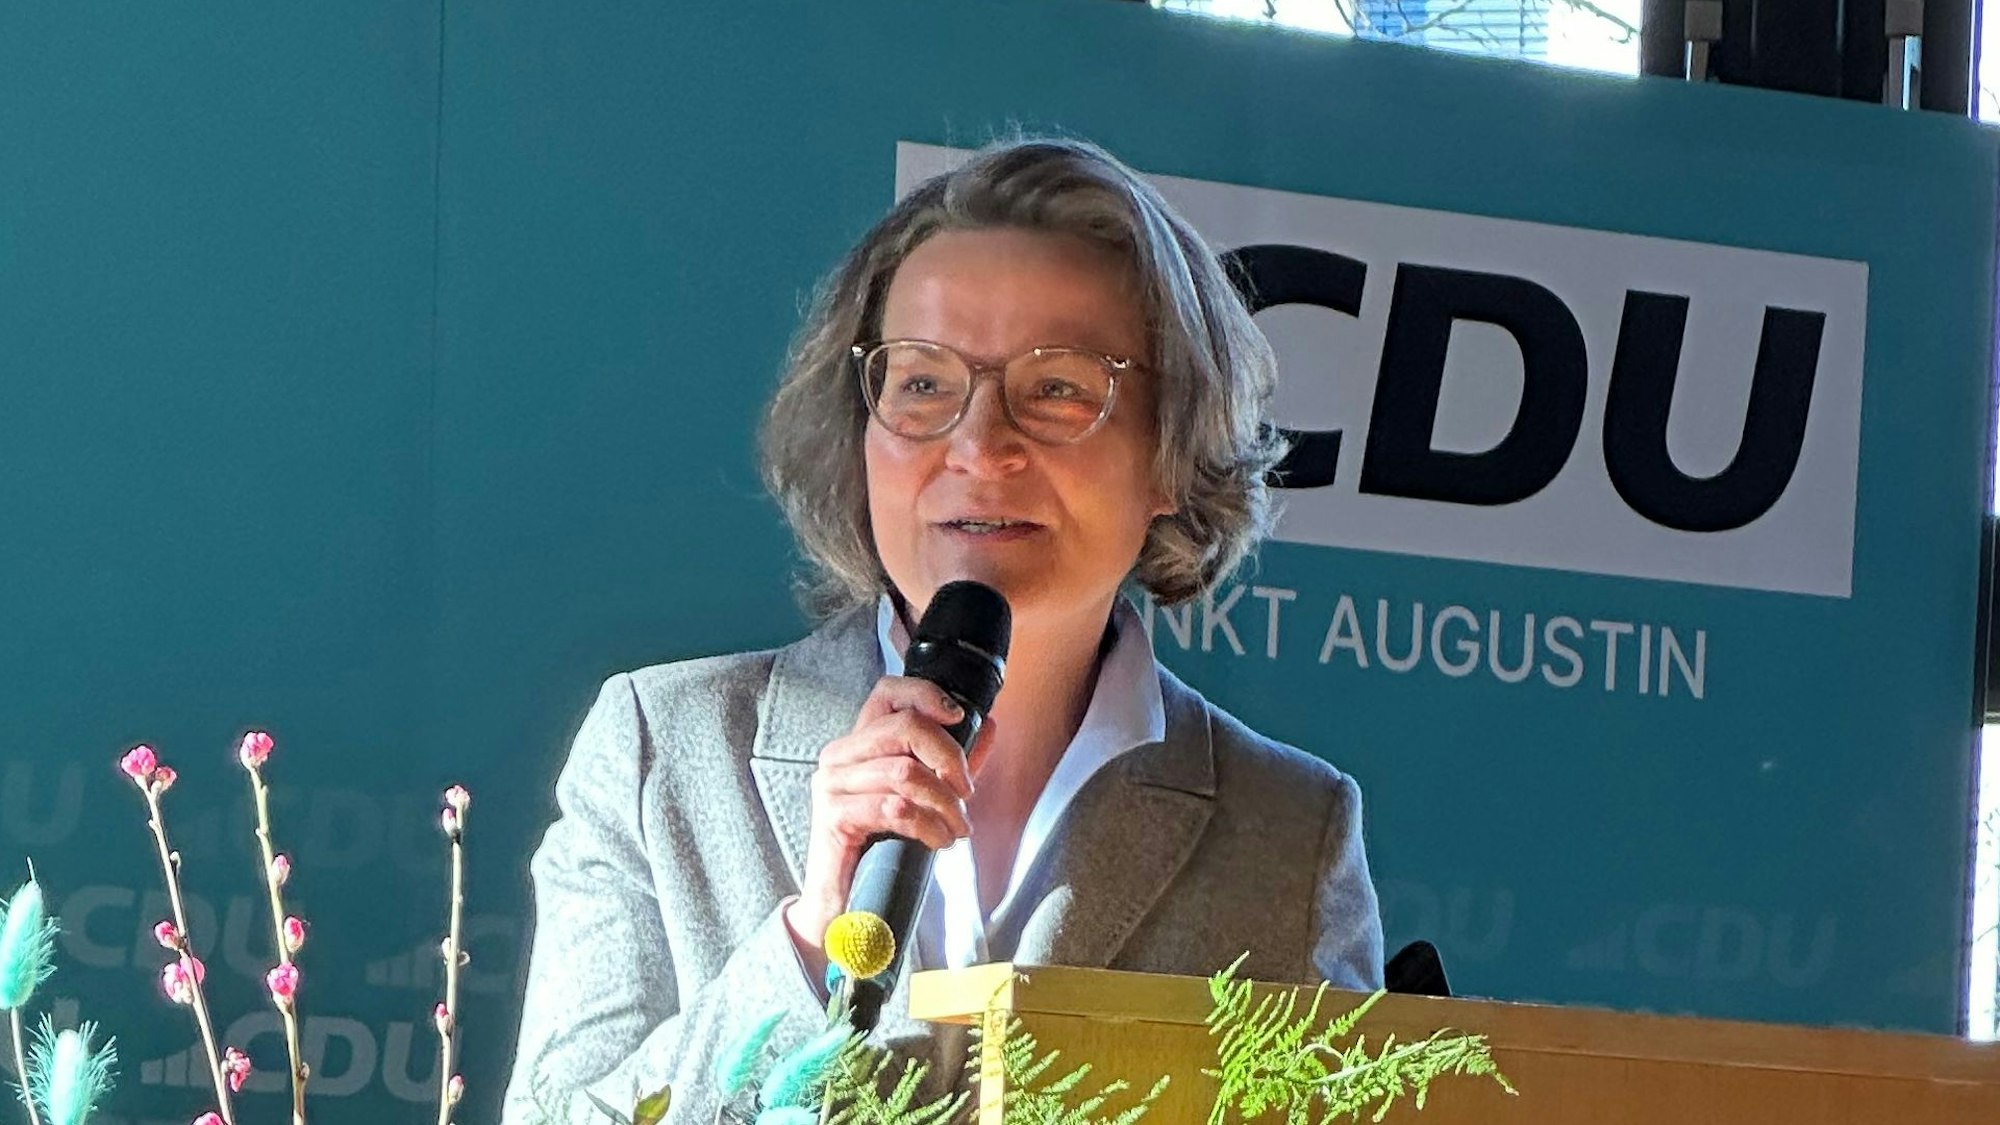 NRW-Kommunalministerin Ina Scharrenbach steht bei einer Veranstaltung der CDU Sankt Augustin am Rednerpult.